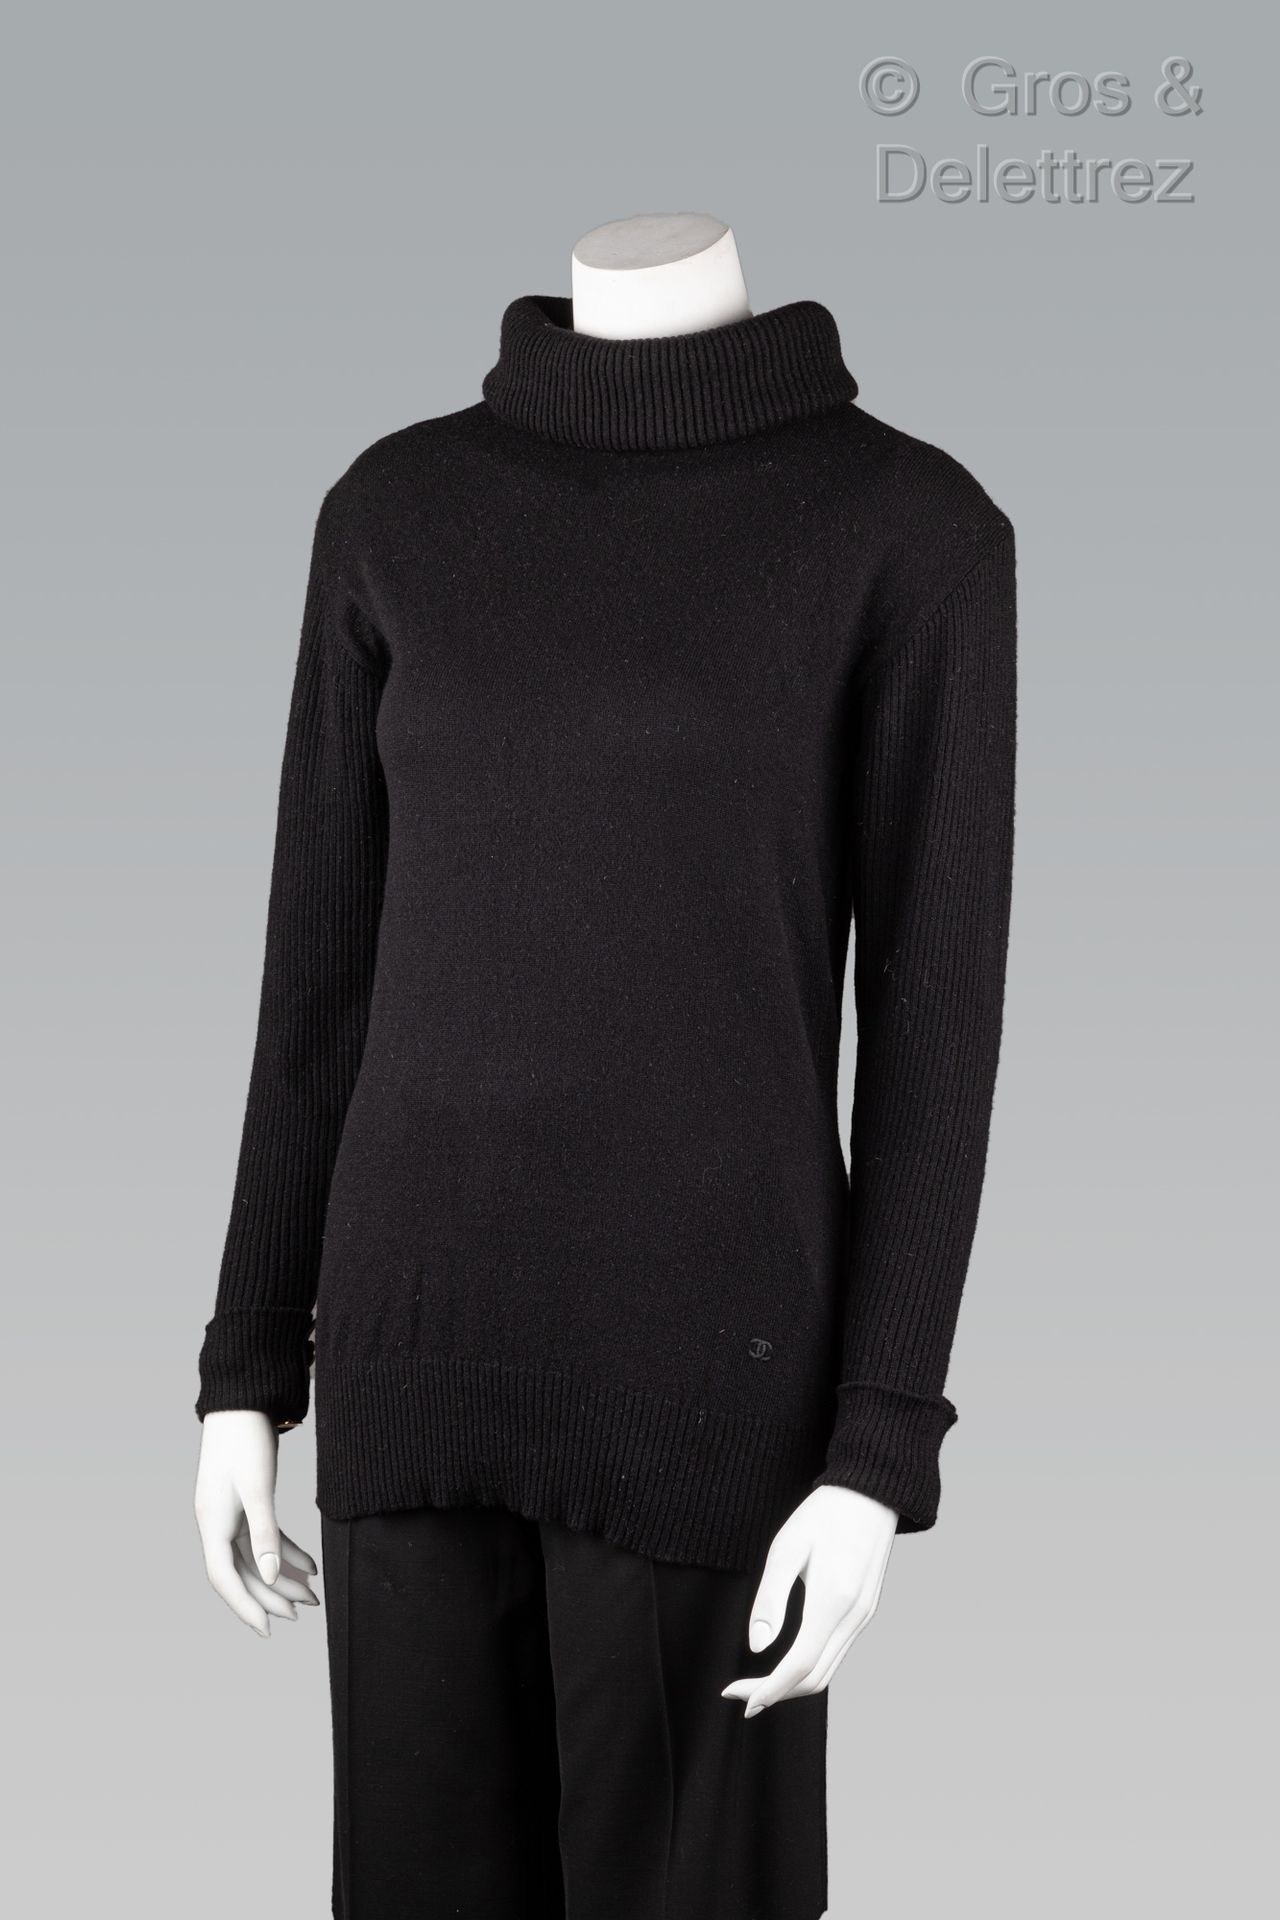 Null 卡尔-拉格斐的香奈儿

1987-1988年秋/冬高级成衣系列

黑色羊绒毛衣，罗纹漏斗领，提醒长袖和衣服底部的人。黑色标签，白色图案。